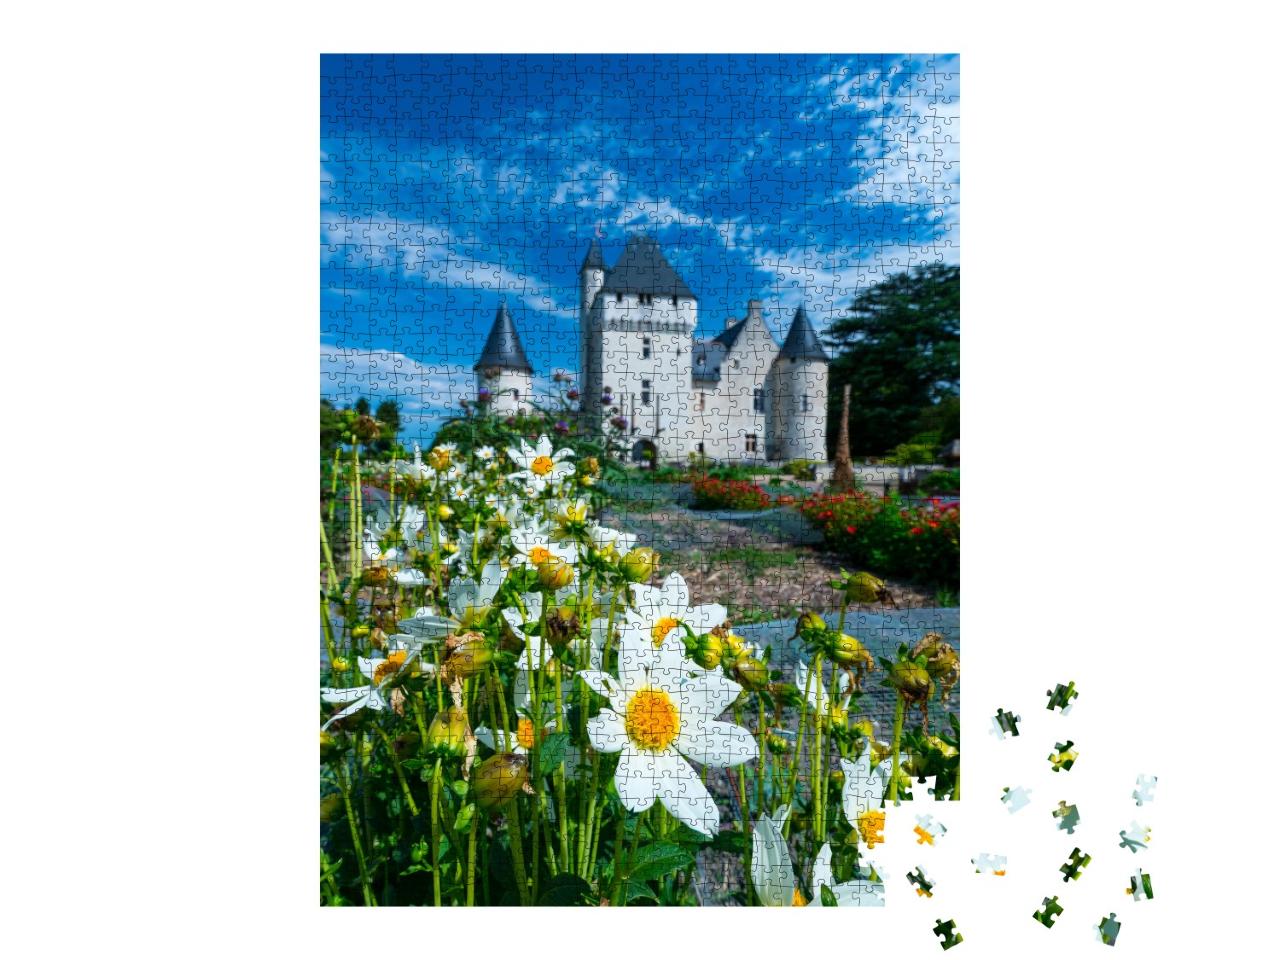 Puzzle de 1000 pièces « Château de Rivau dans le village de Lémeré, vallée de la Loire, France »